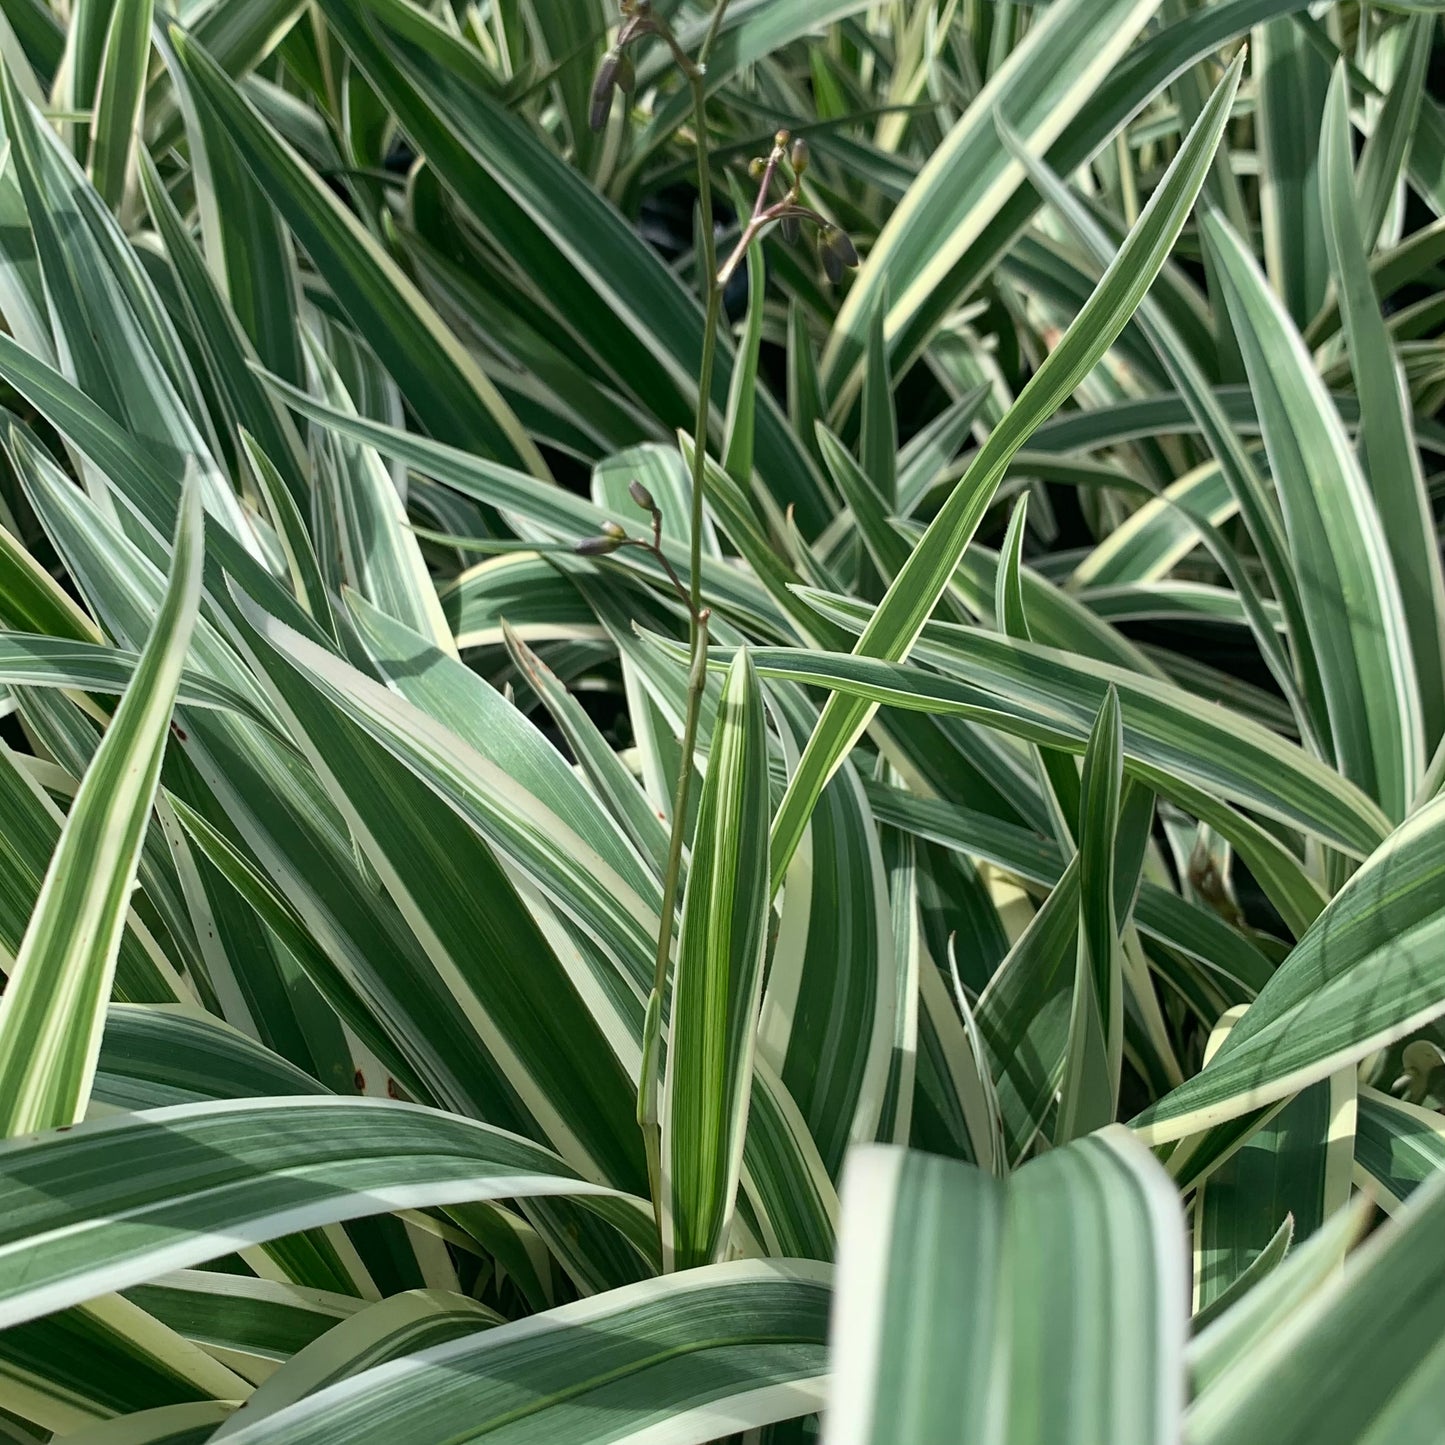 Dianella tasmanica, variegata "Flax Lily"